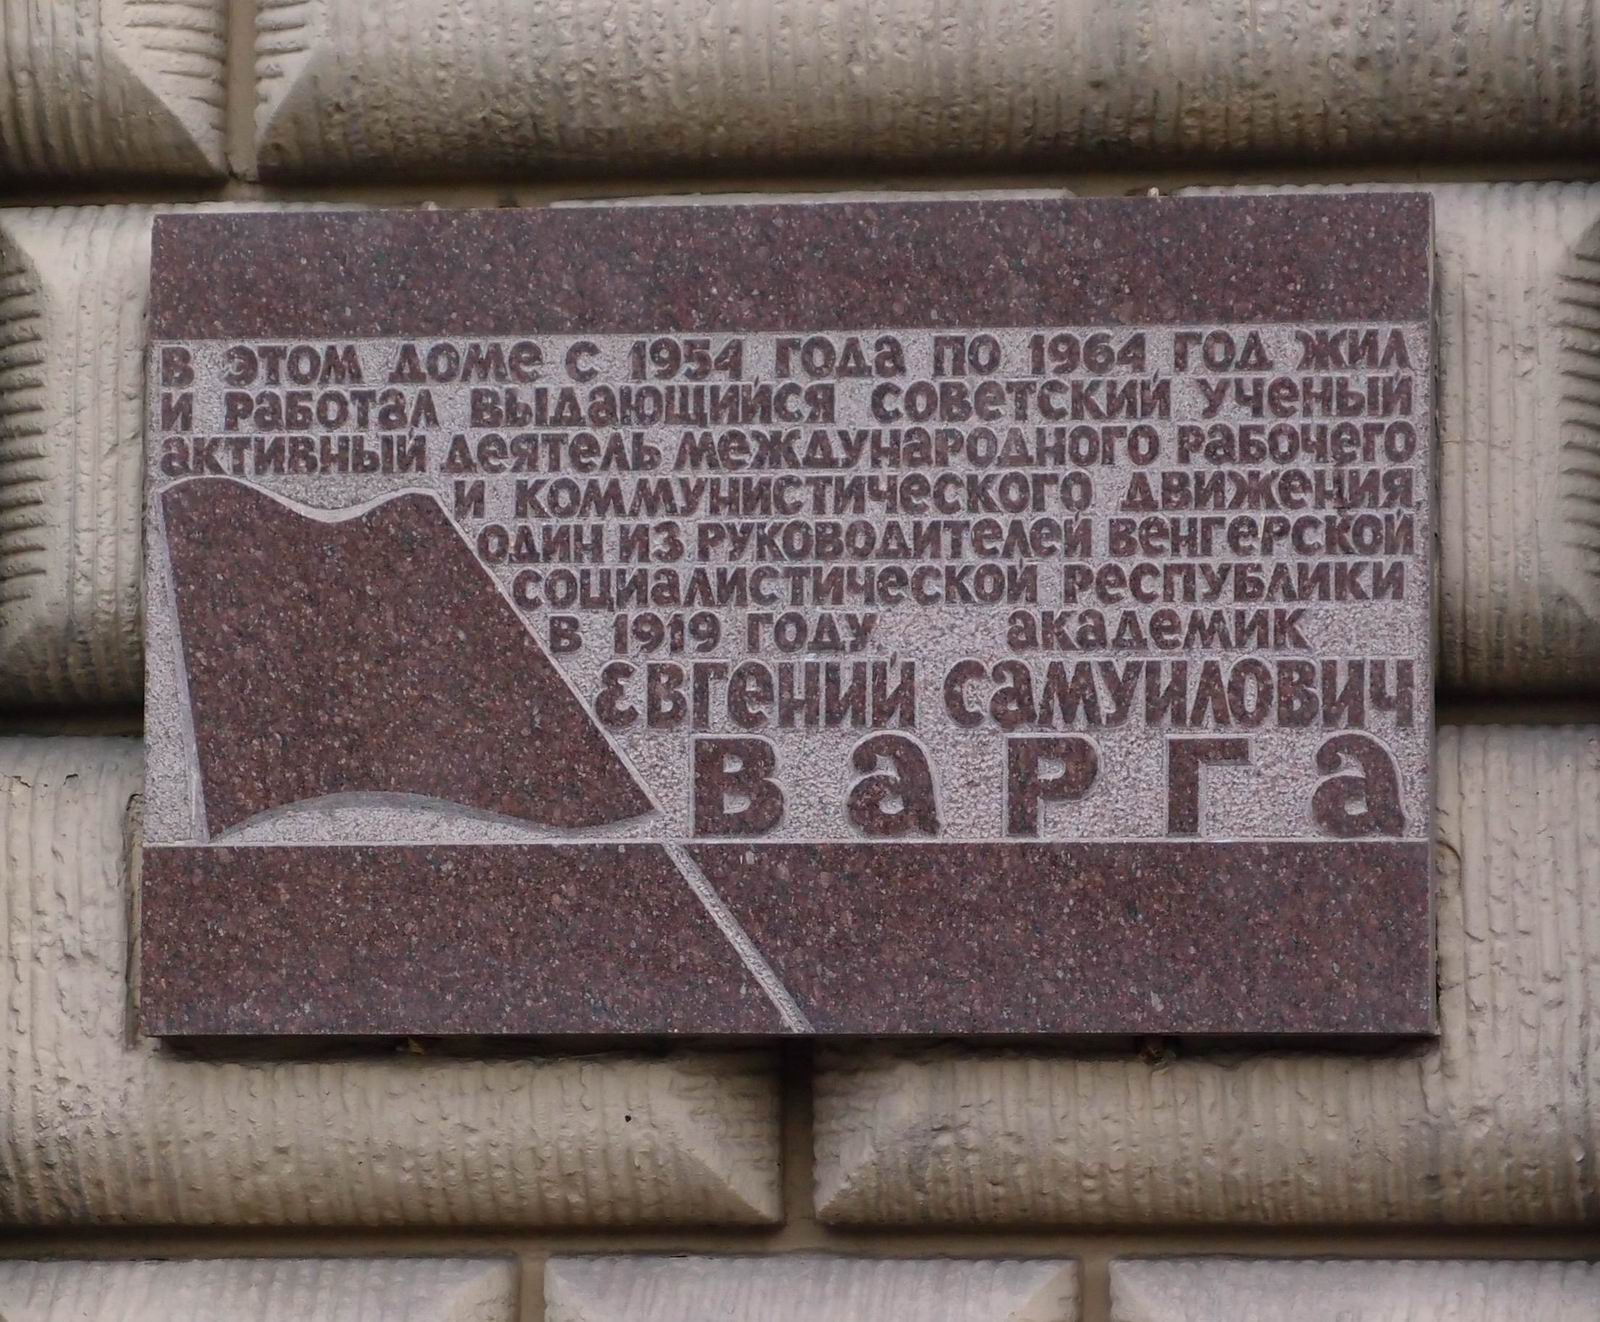 Мемориальная доска Варге Е.С. (1879–1964), арх. С.А.Захаров, на Ленинском проспекте, дом 11, открыта 1.7.1975.